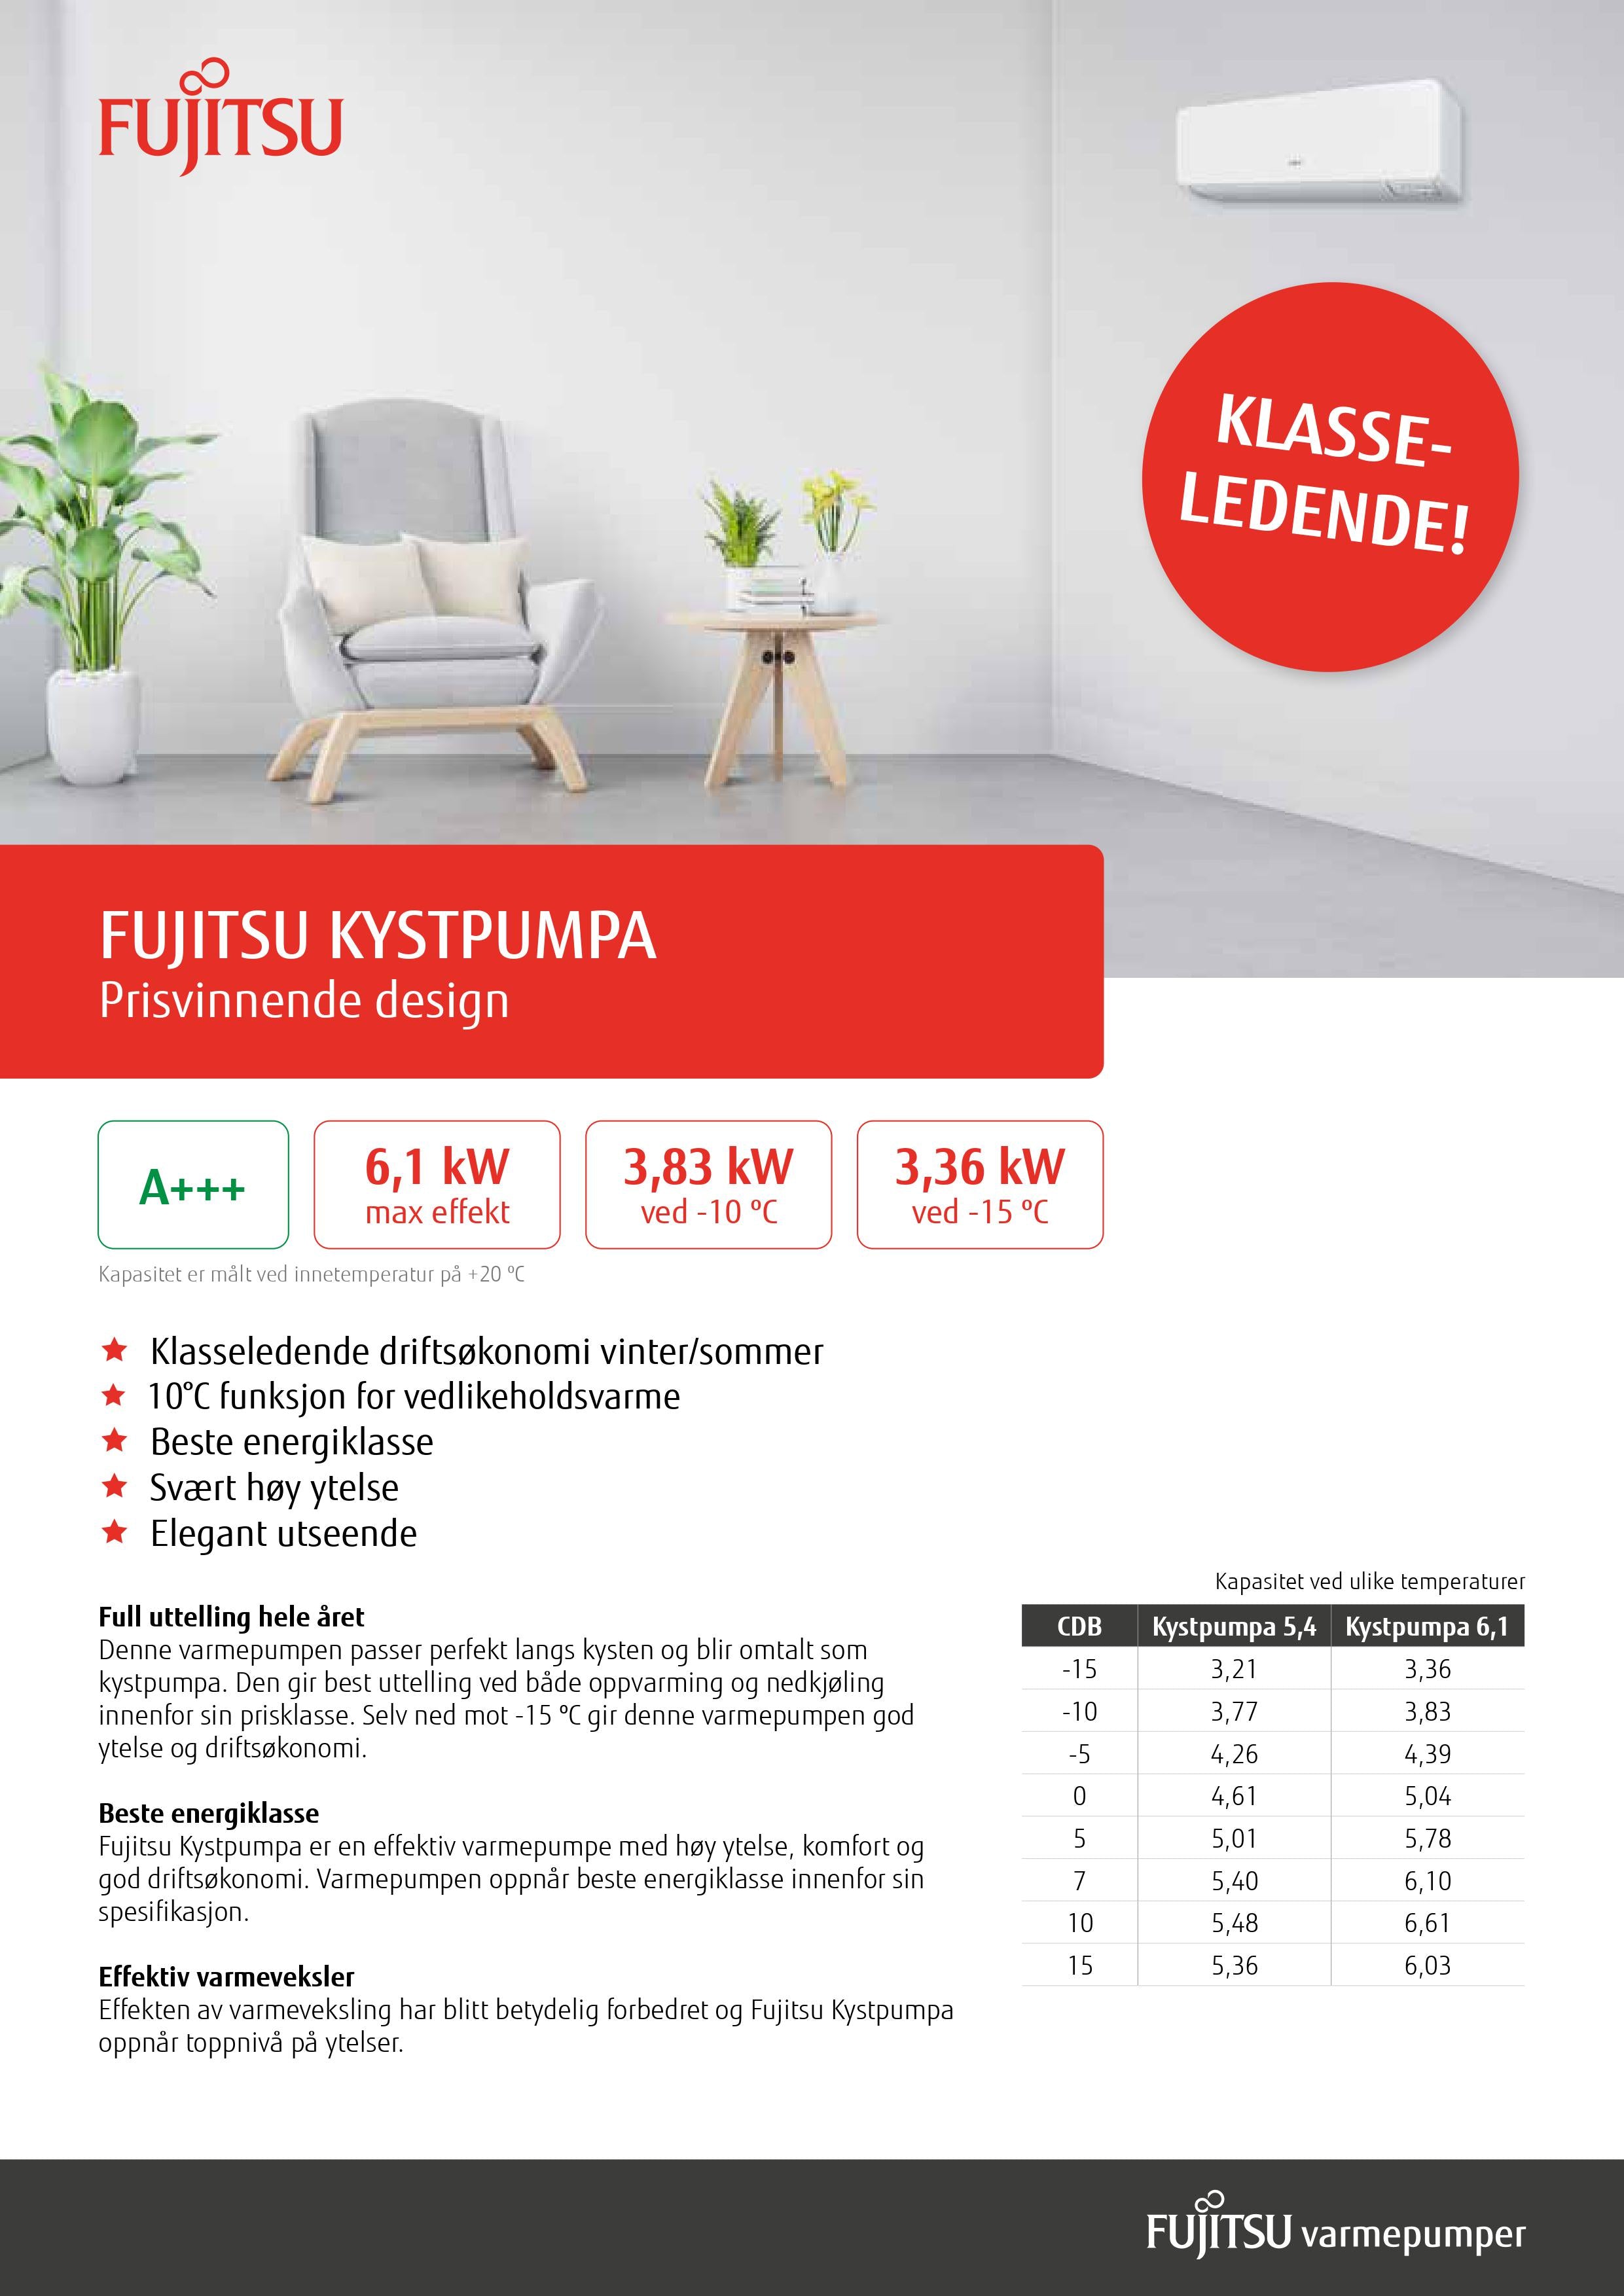 Fujitsu Kystpumpa 5.4 inkludert montasje